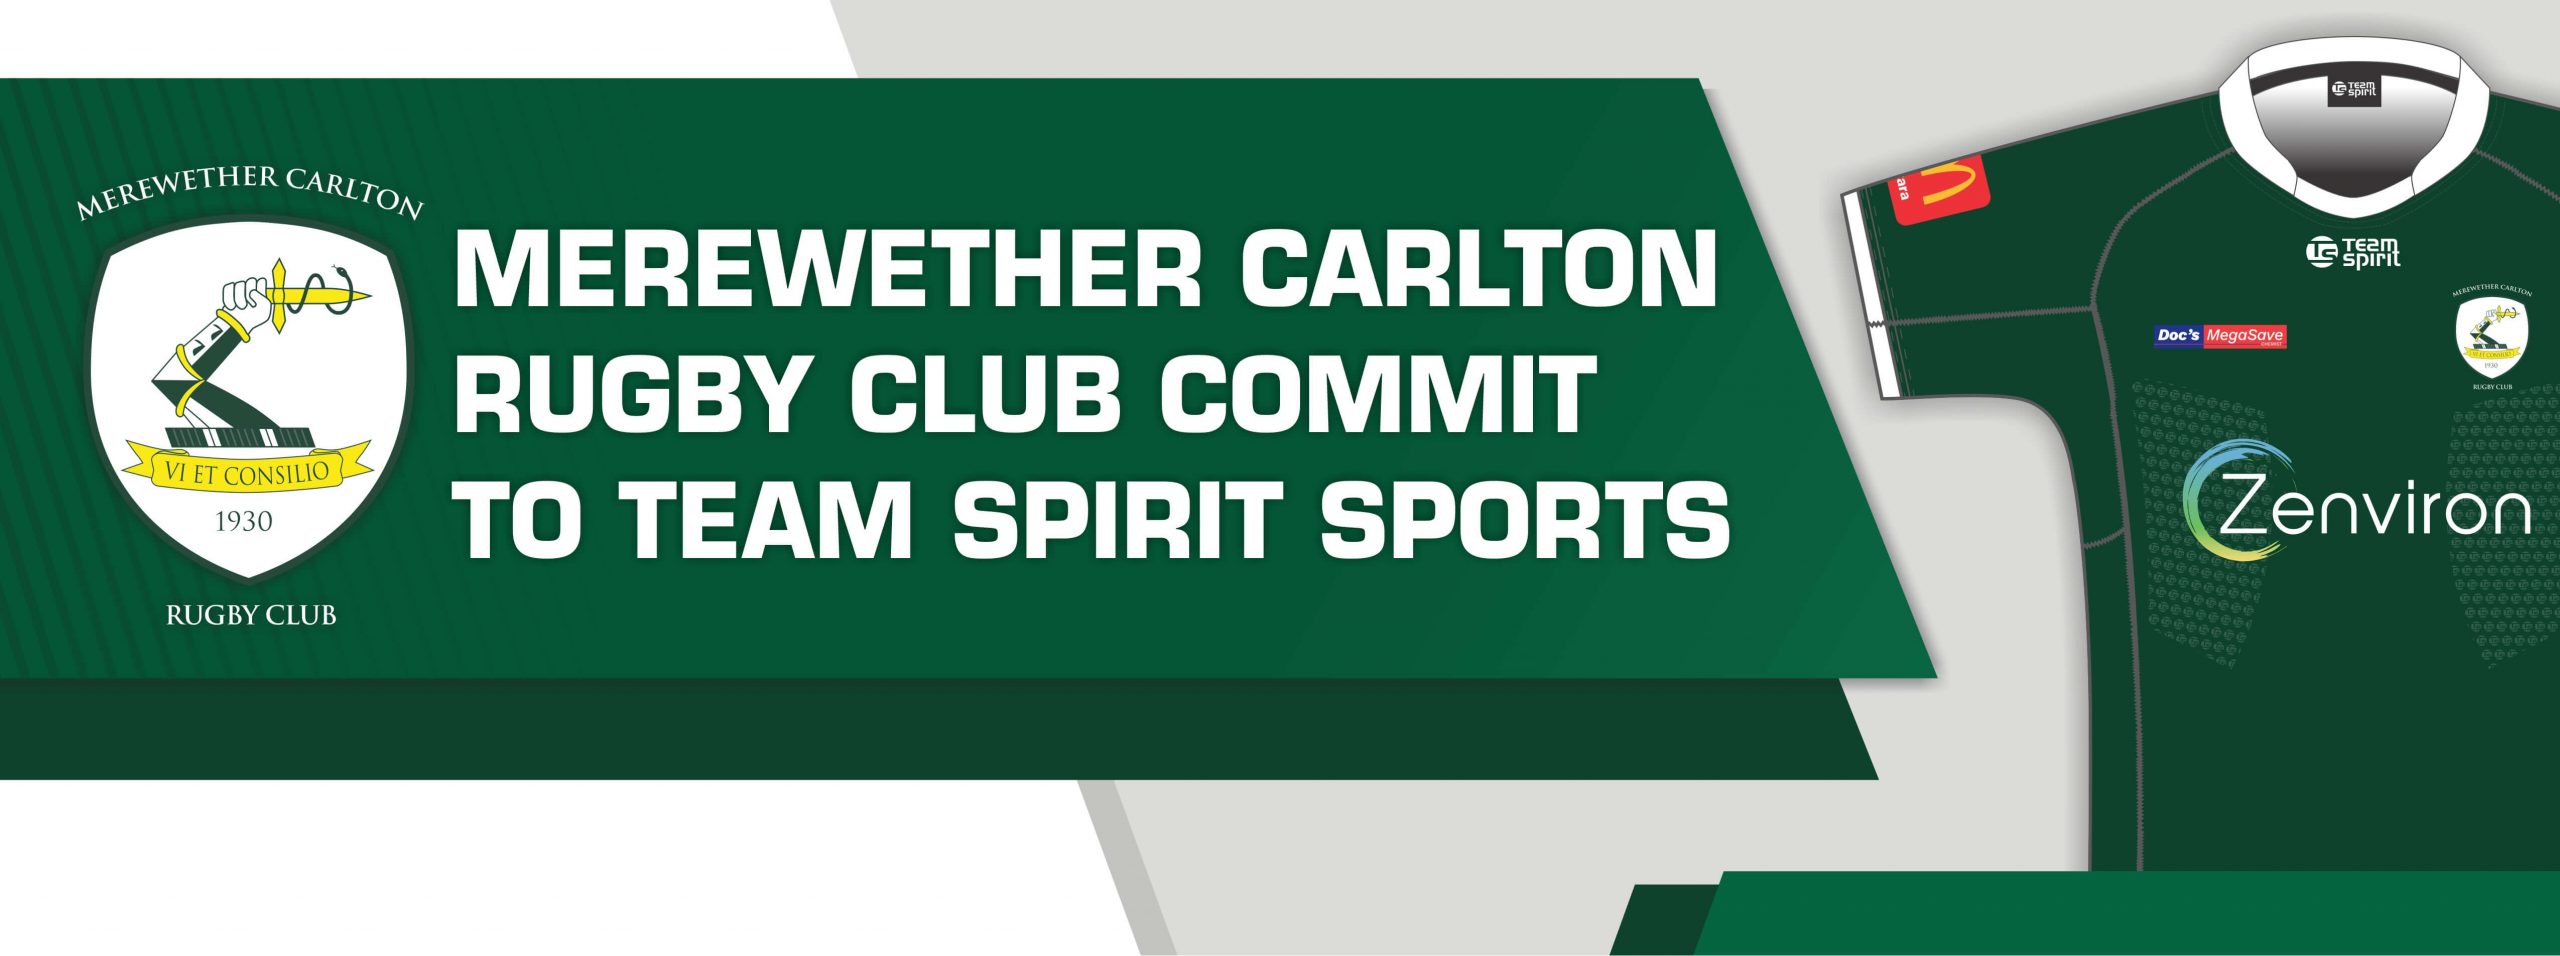 Merewether Carlton Rugby Union Club